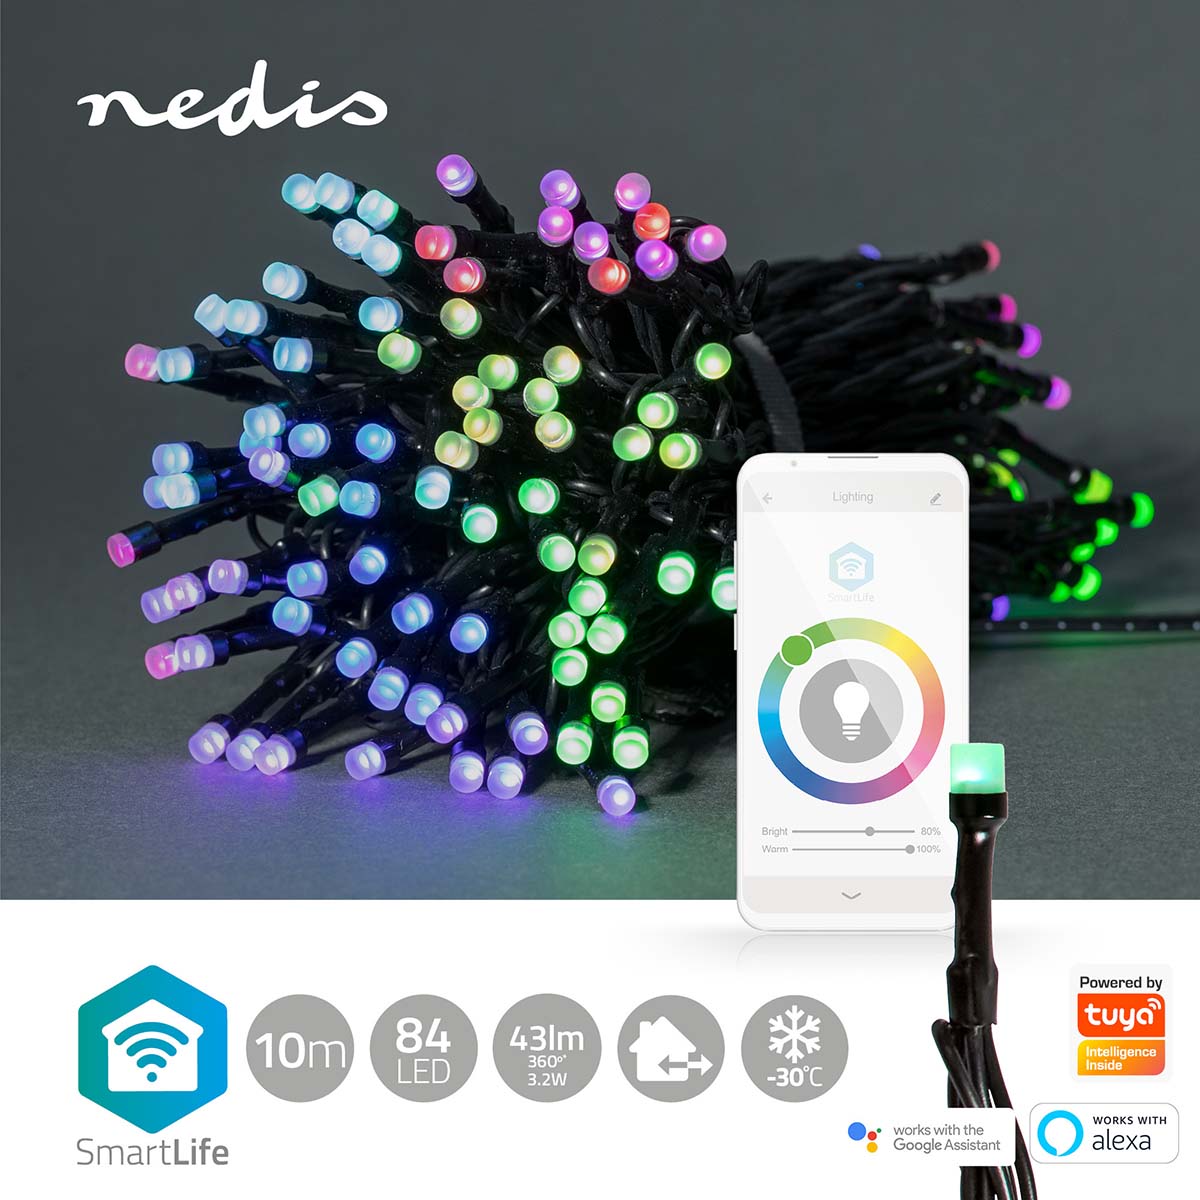 Luzes Nedis Wi-Fi RGB, 84 LEDs em 10m, oferecem iluminação inteligente para um Natal vibrante, controlável via Wi-Fi.